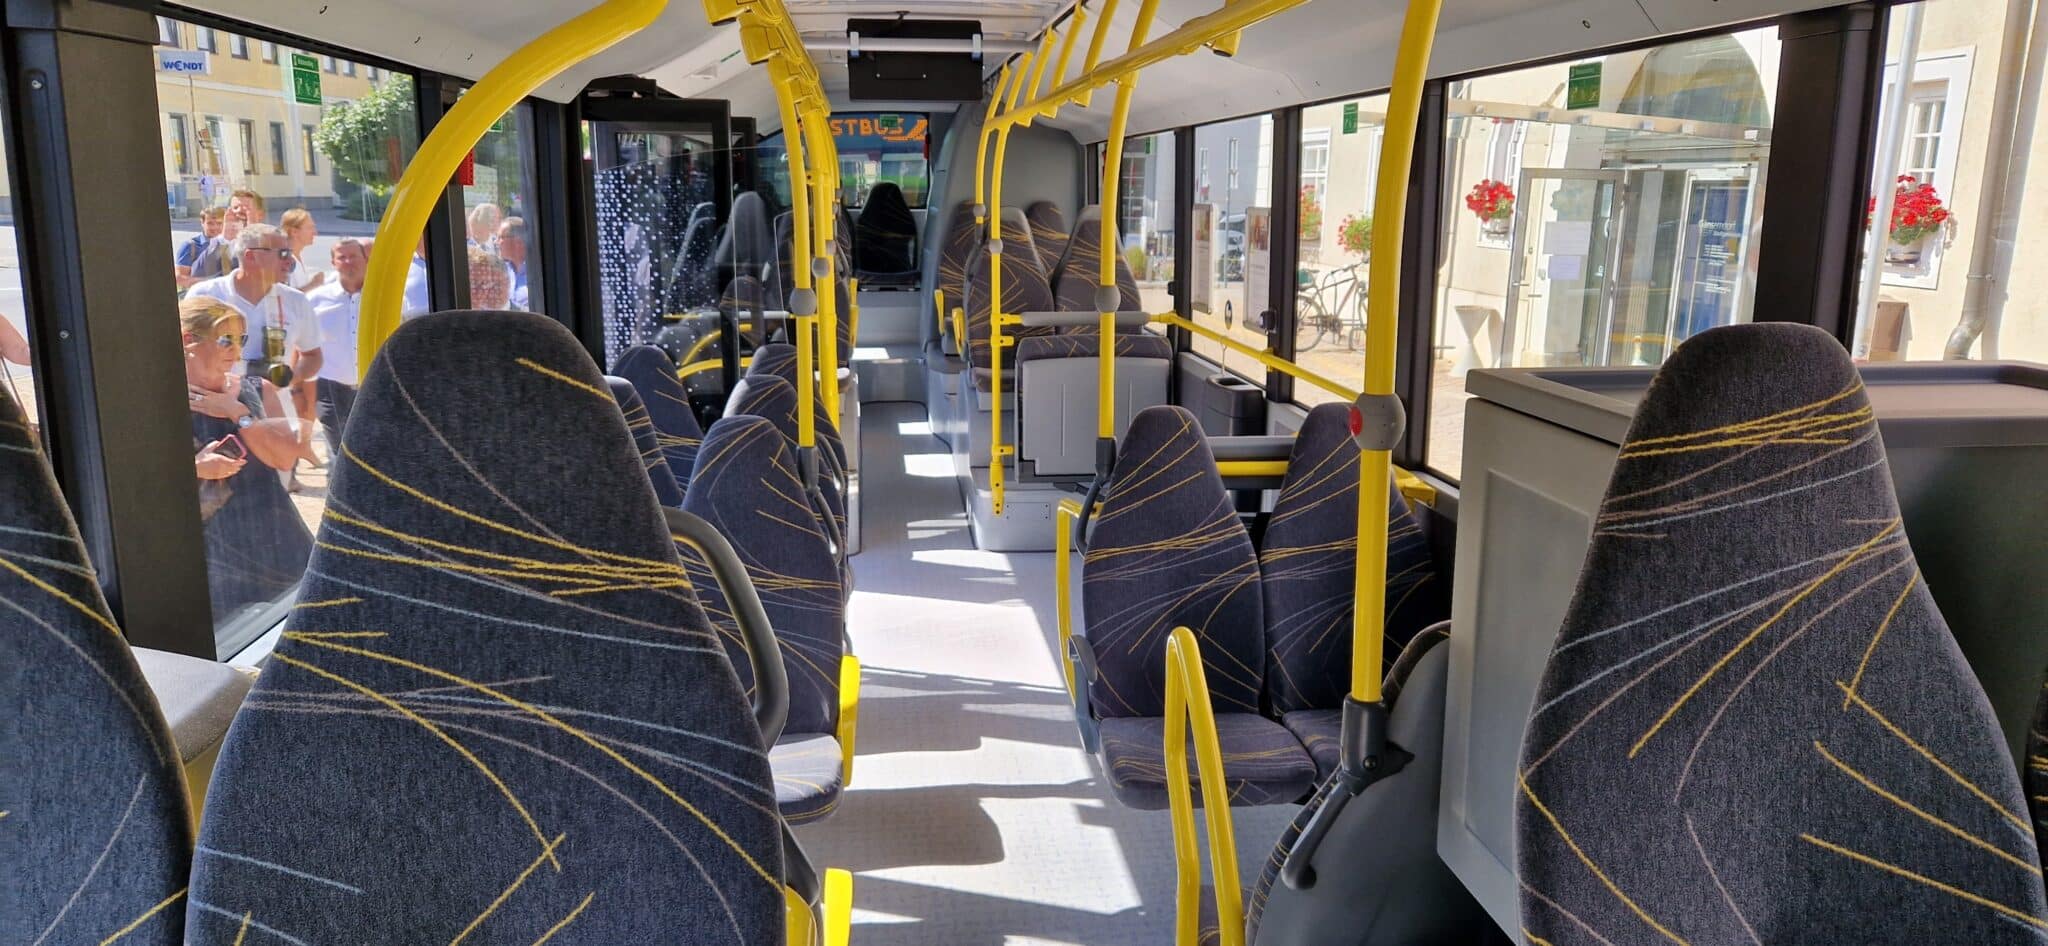 e-Bus - System im südlichen Weinviertel für den Regionalverkehr | 20220818 104731 min scaled